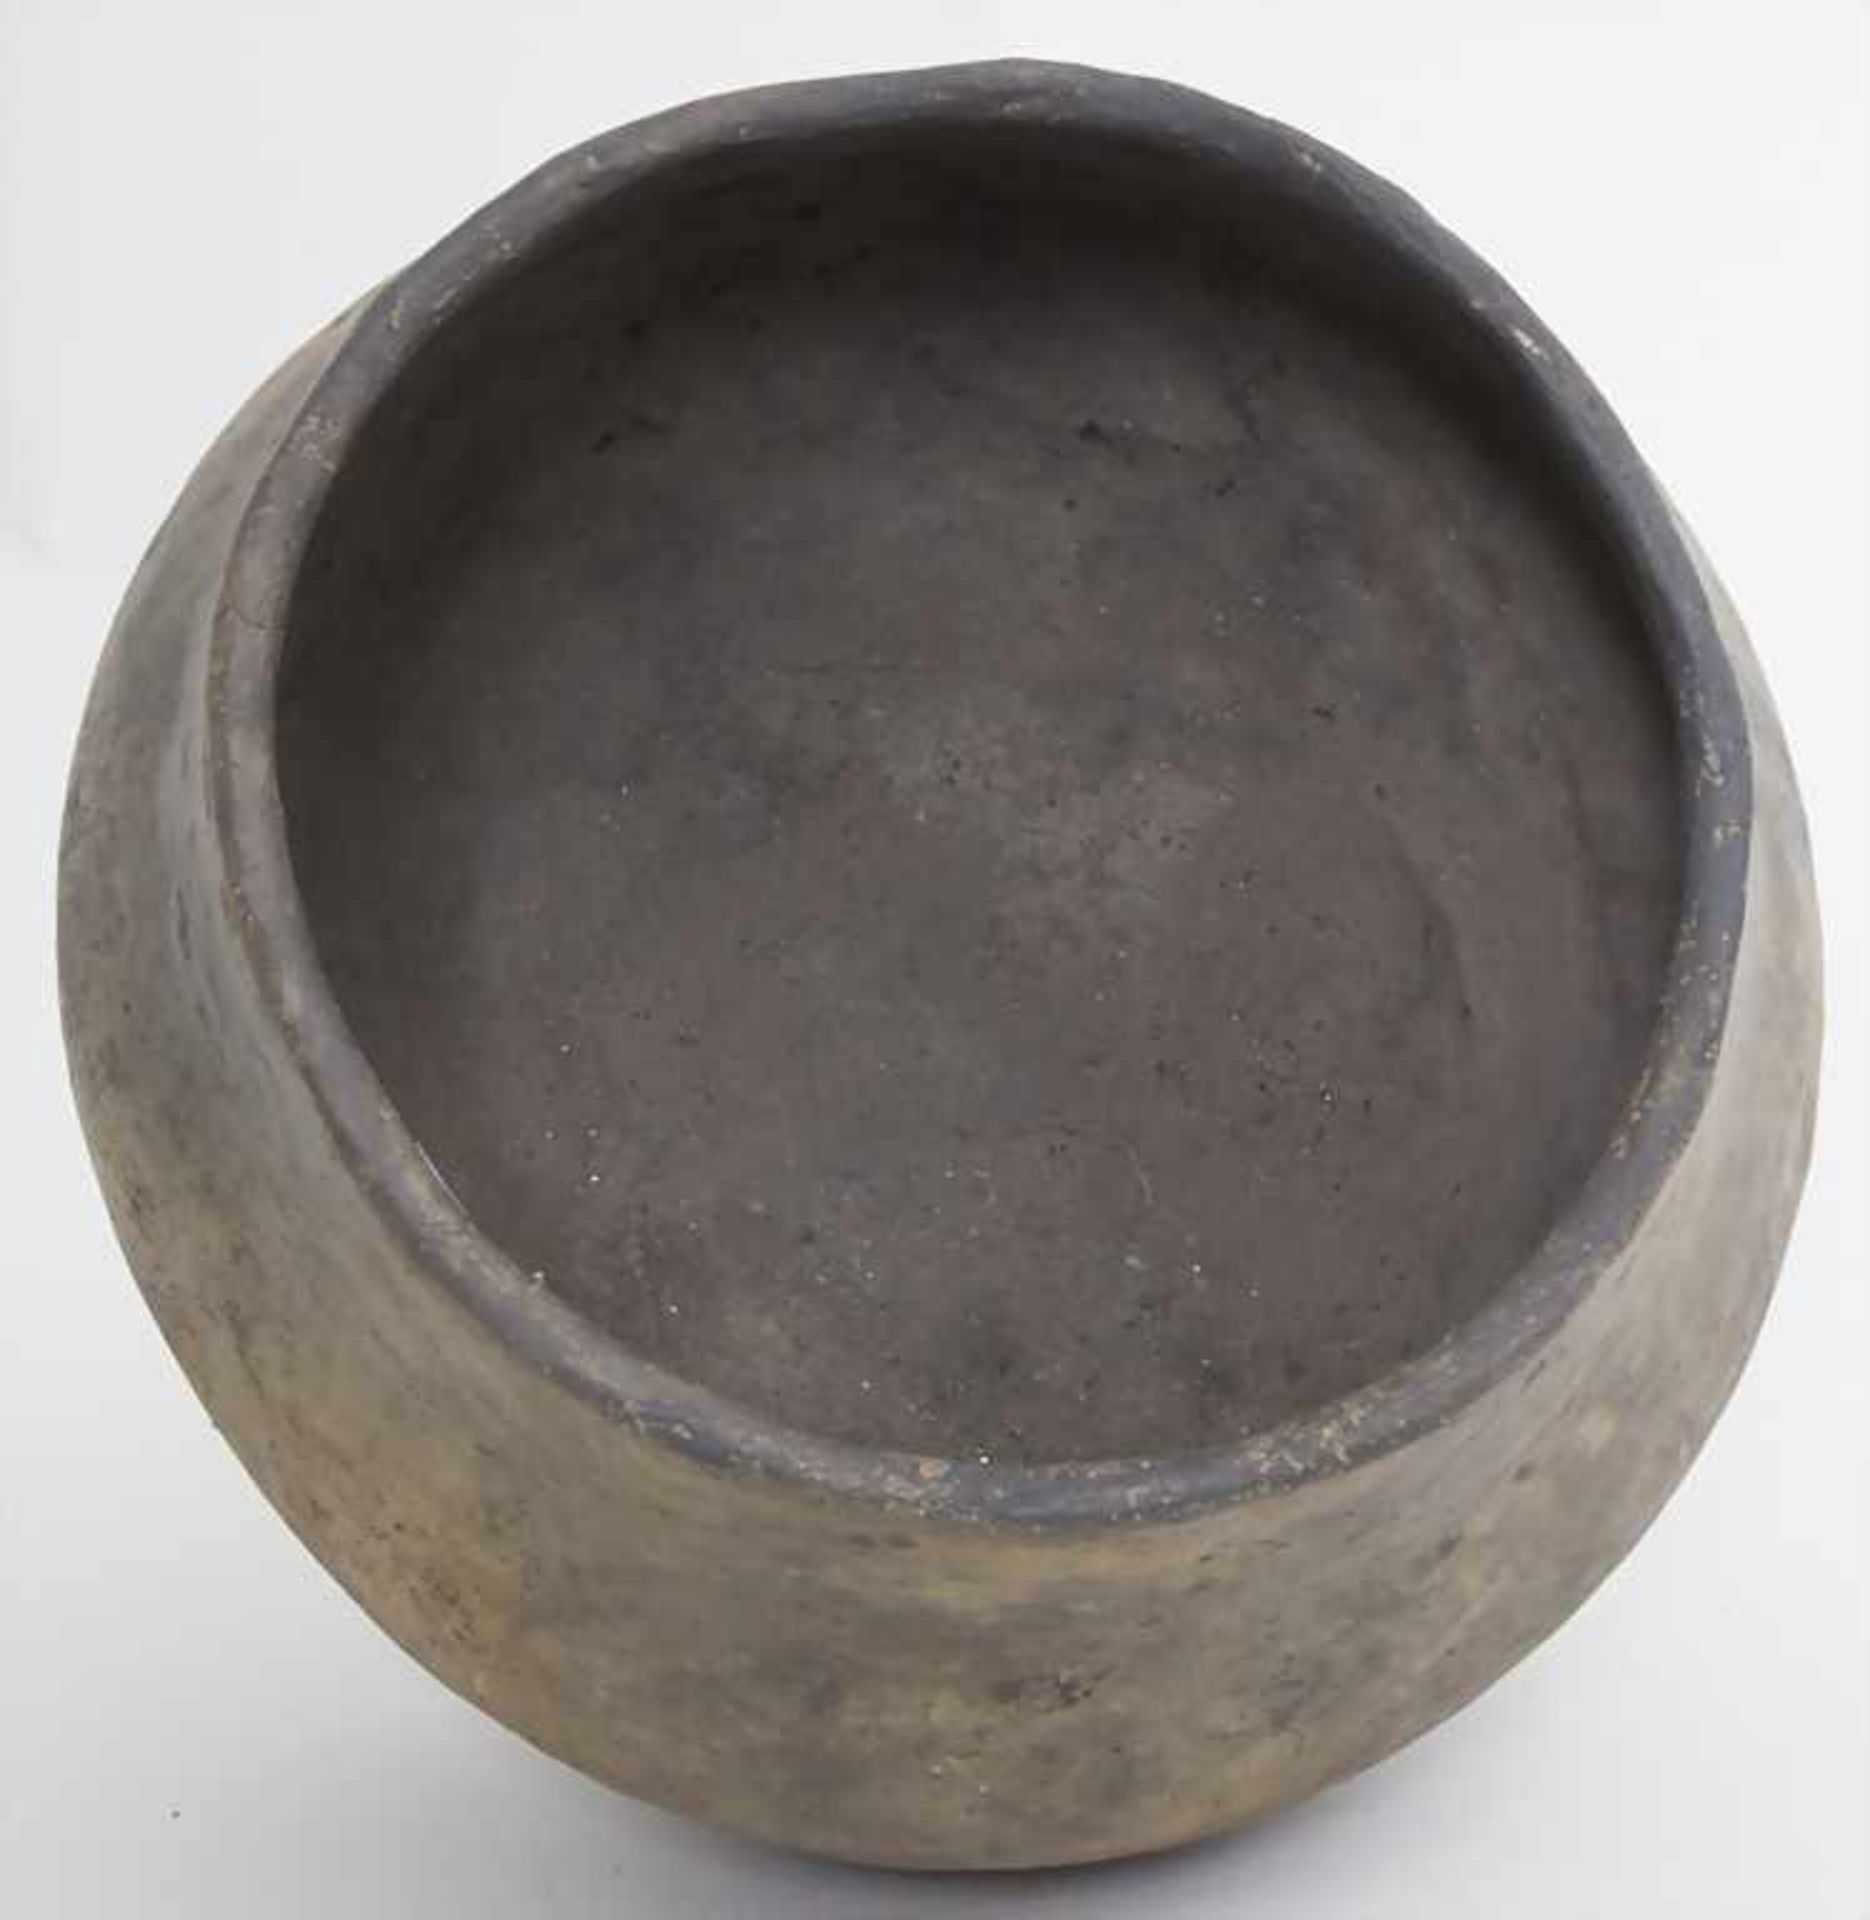 Bronzezeitliches Keramik-Gefäß / A Bronze Age ceramic vessel, Lausitzer Kultur, 9. - 6. Jh. v. Chr. - Bild 2 aus 3